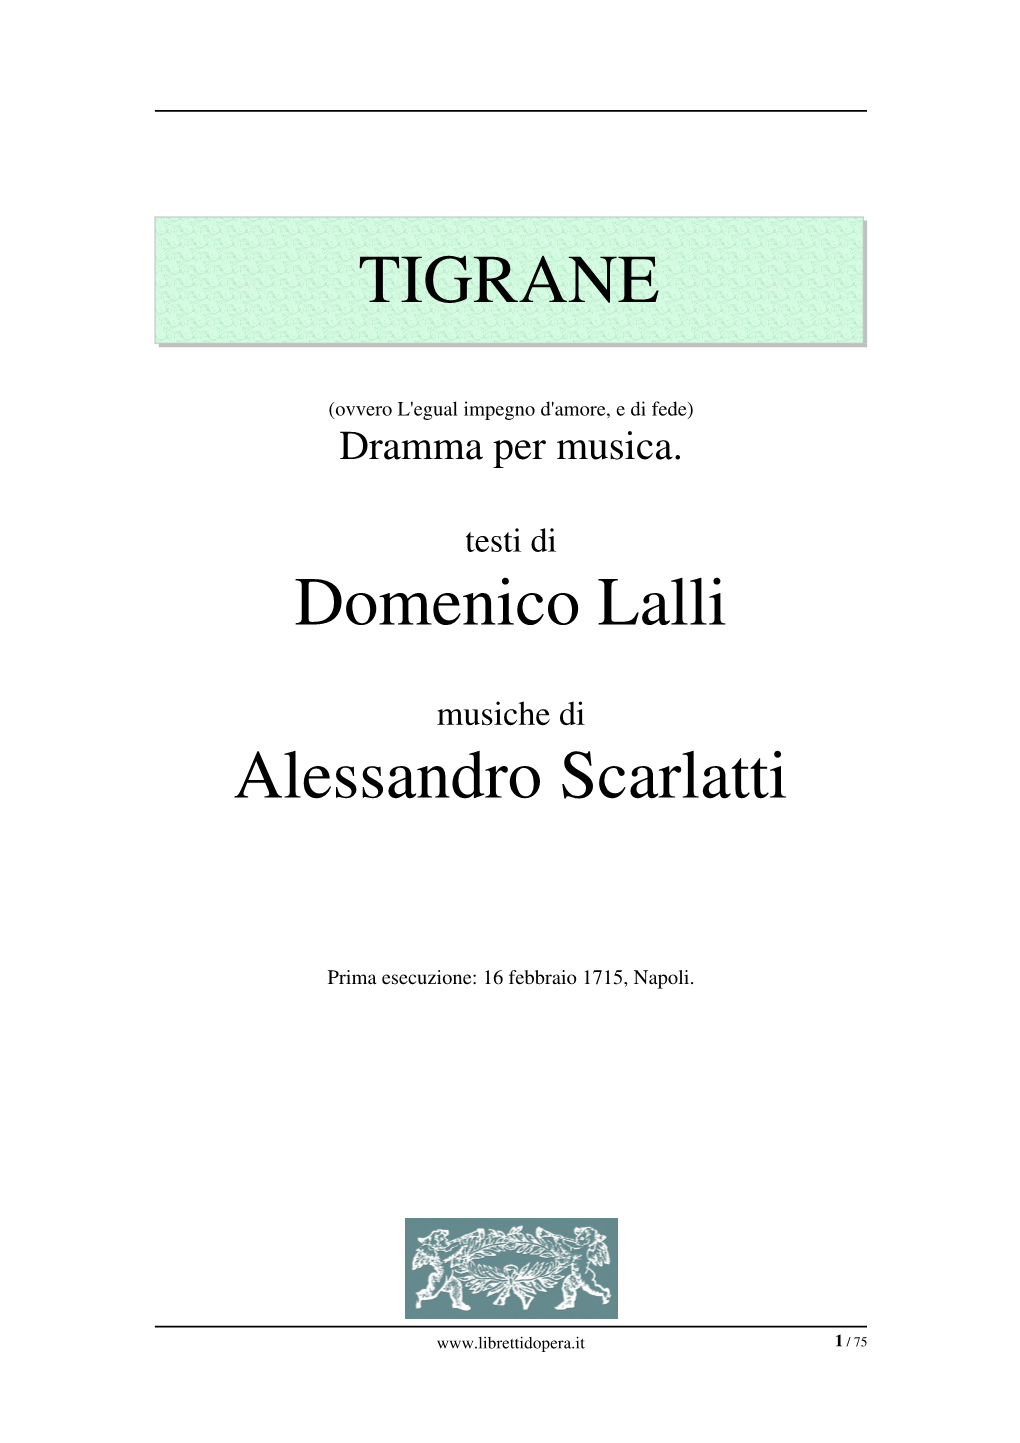 TIGRANE Domenico Lalli Alessandro Scarlatti